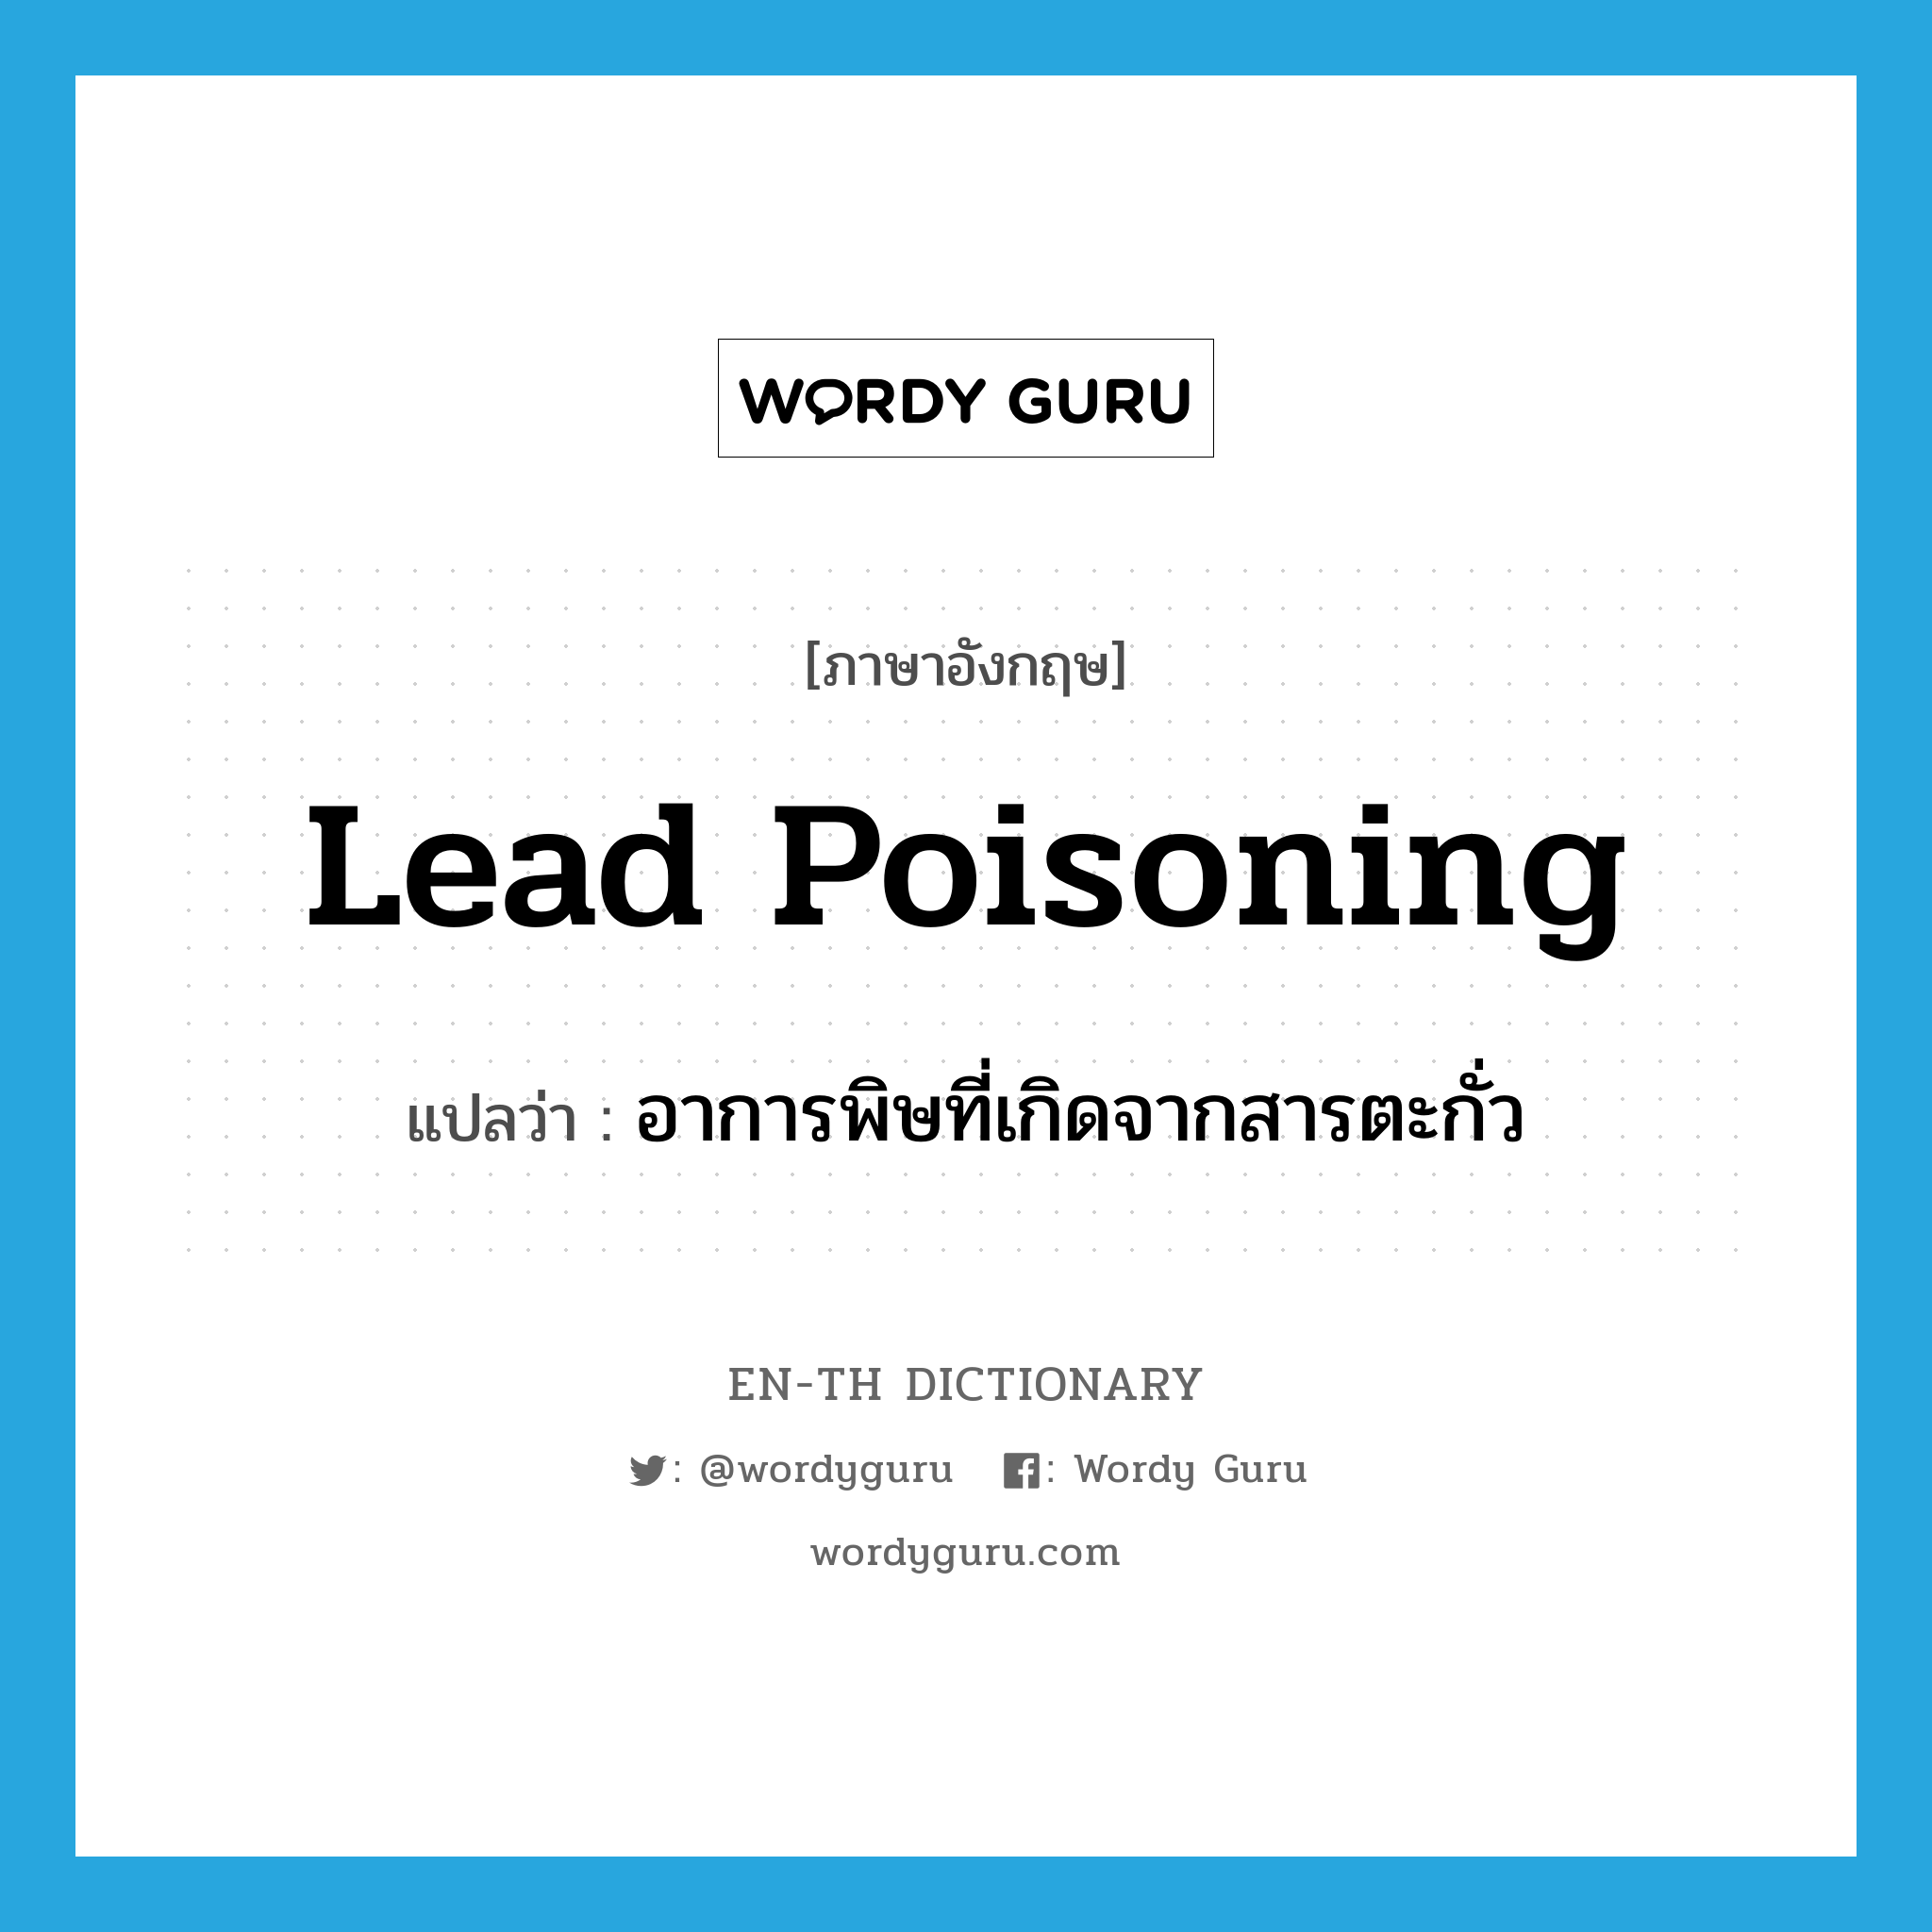 lead poisoning แปลว่า?, คำศัพท์ภาษาอังกฤษ lead poisoning แปลว่า อาการพิษที่เกิดจากสารตะกั่ว ประเภท N หมวด N